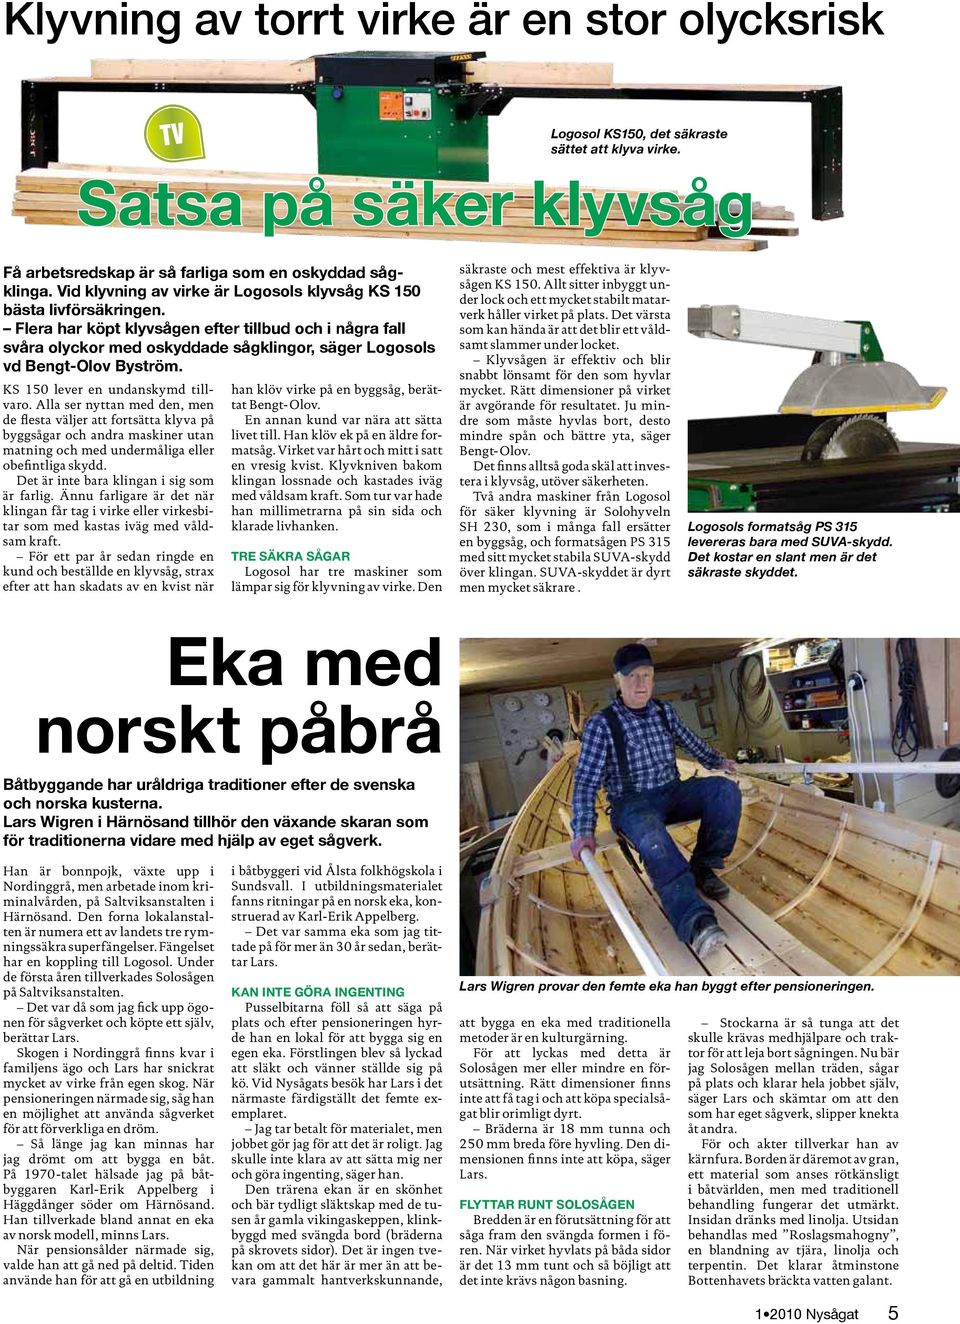 Flera har köpt klyvsågen efter tillbud och i några fall svåra olyckor med oskyddade sågklingor, säger Logosols vd Bengt-Olov Byström. KS 150 lever en undanskymd tillvaro.